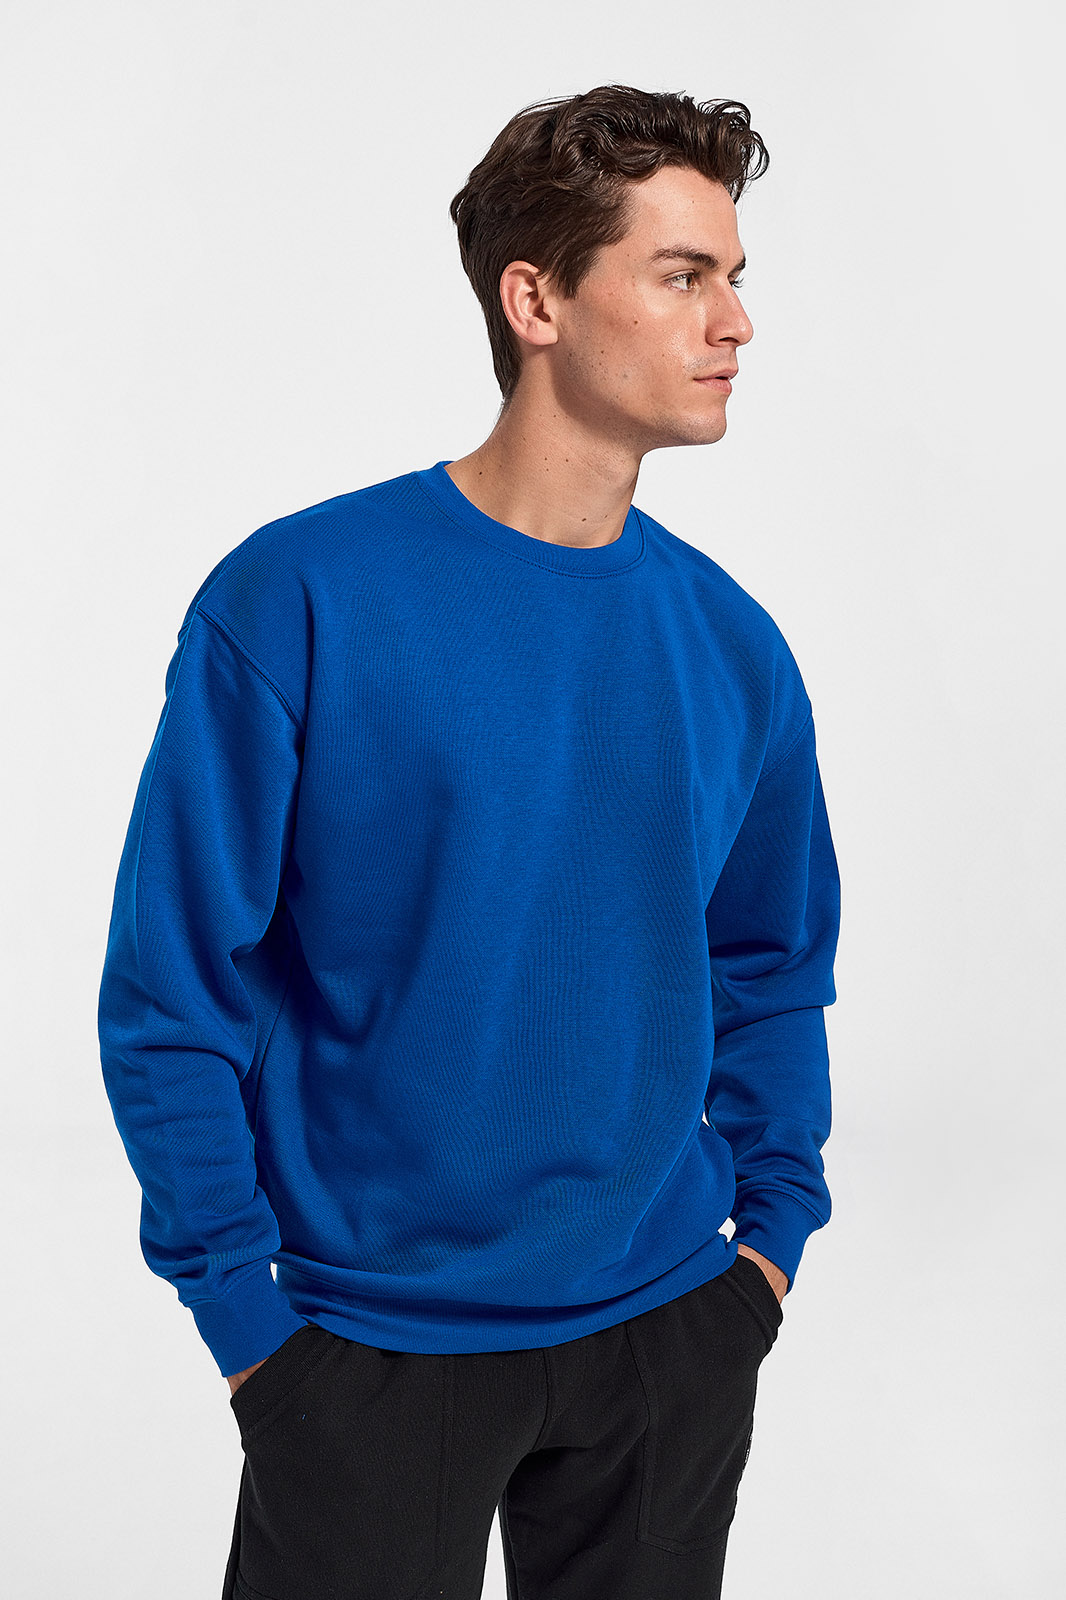 Einfarbiges Herren-Sweatshirt JHK in 8 Farben